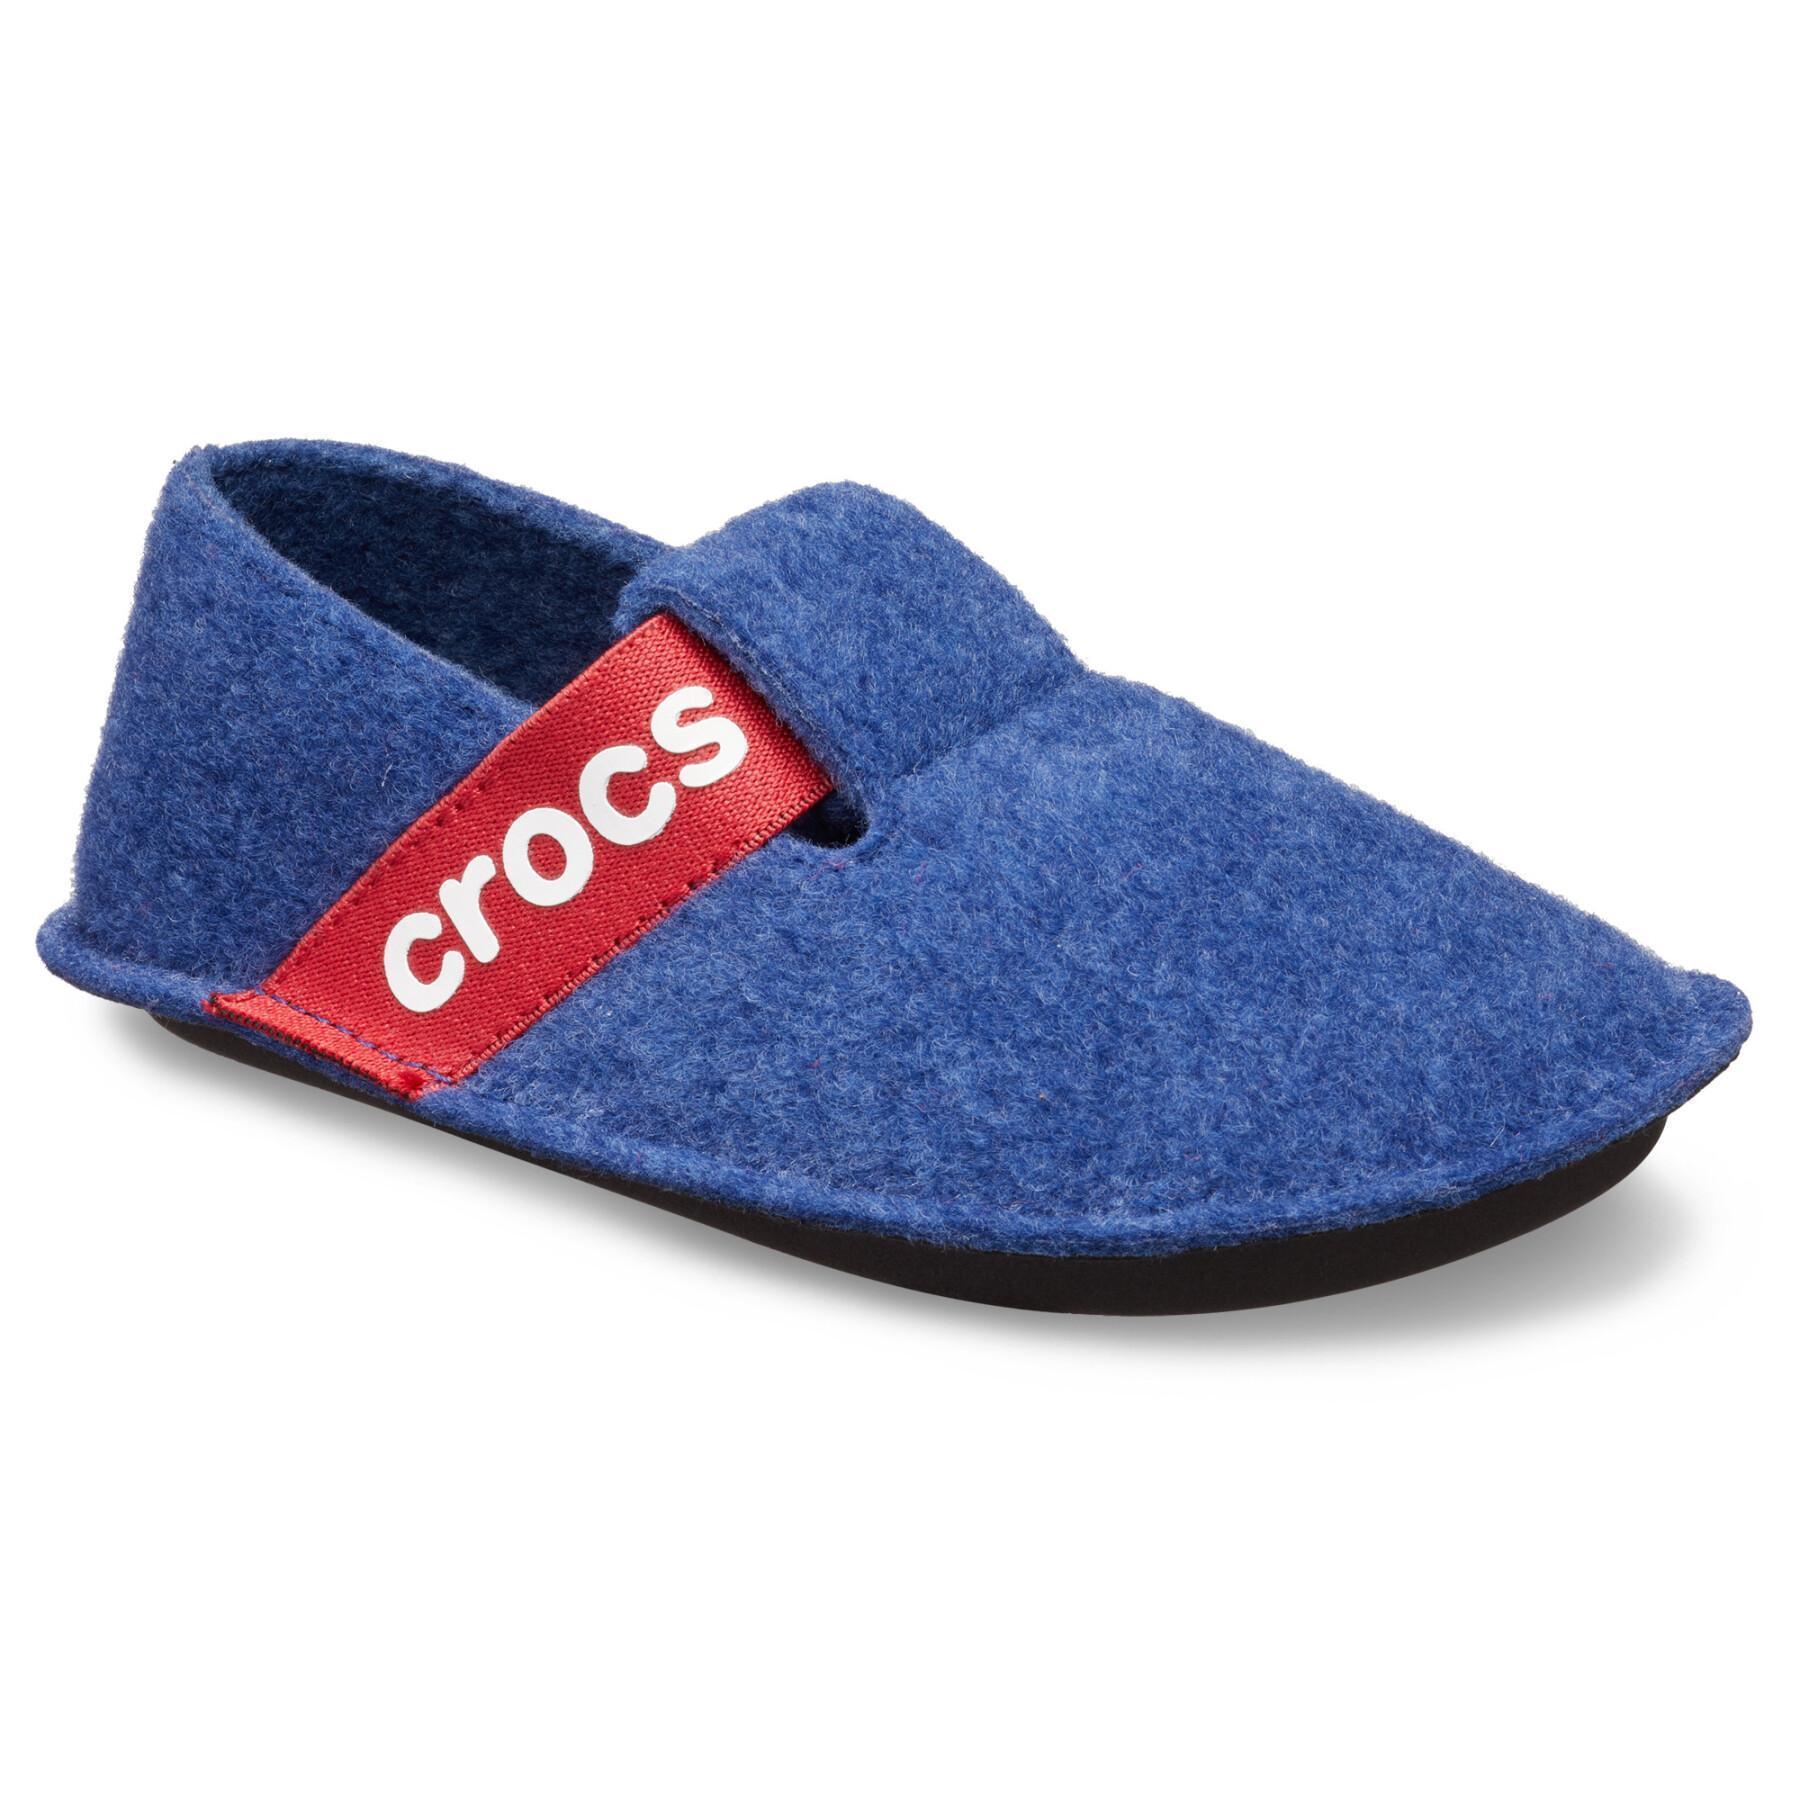 Pantufas para crianças Crocs classic slipper